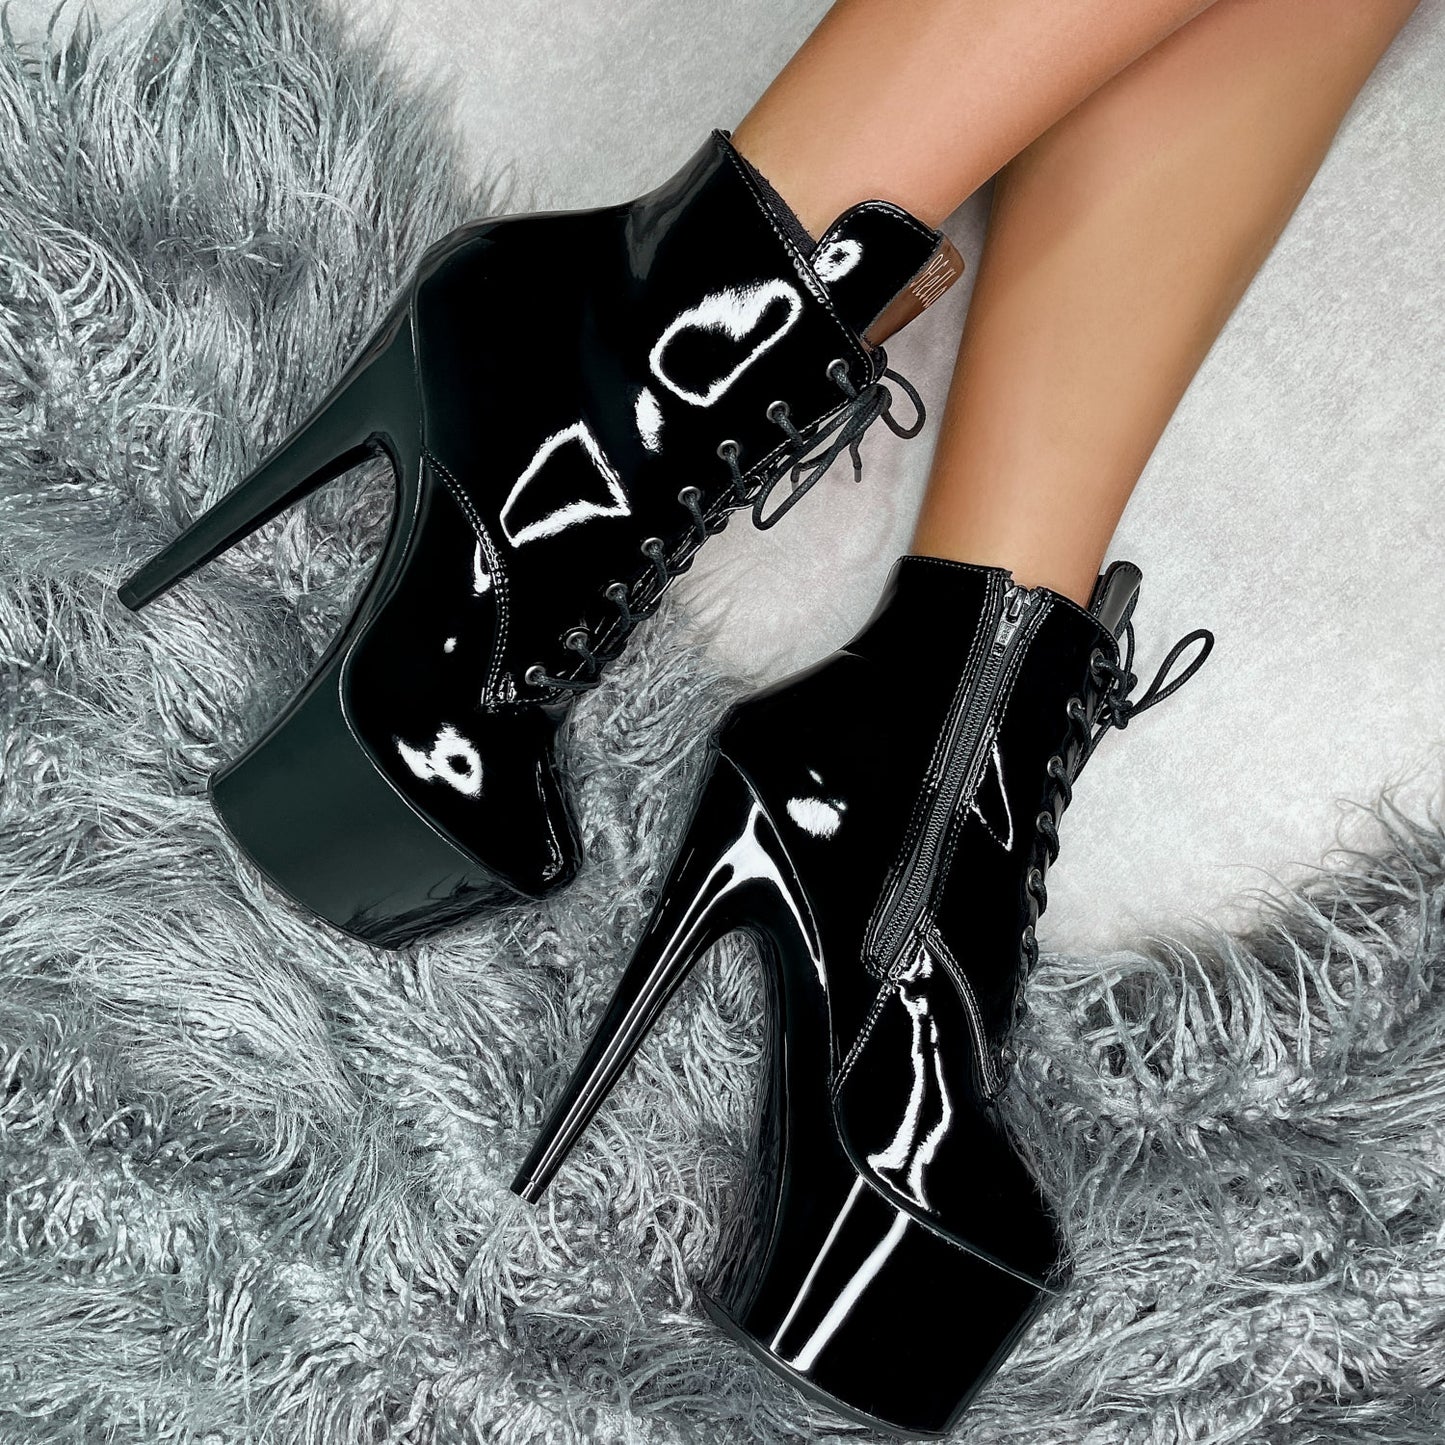 Lipkit Ankle Boot - Black Beatle - 7 INCH, stripper shoe, stripper heel, pole heel, not a pleaser, platform, dancer, pole dance, floor work